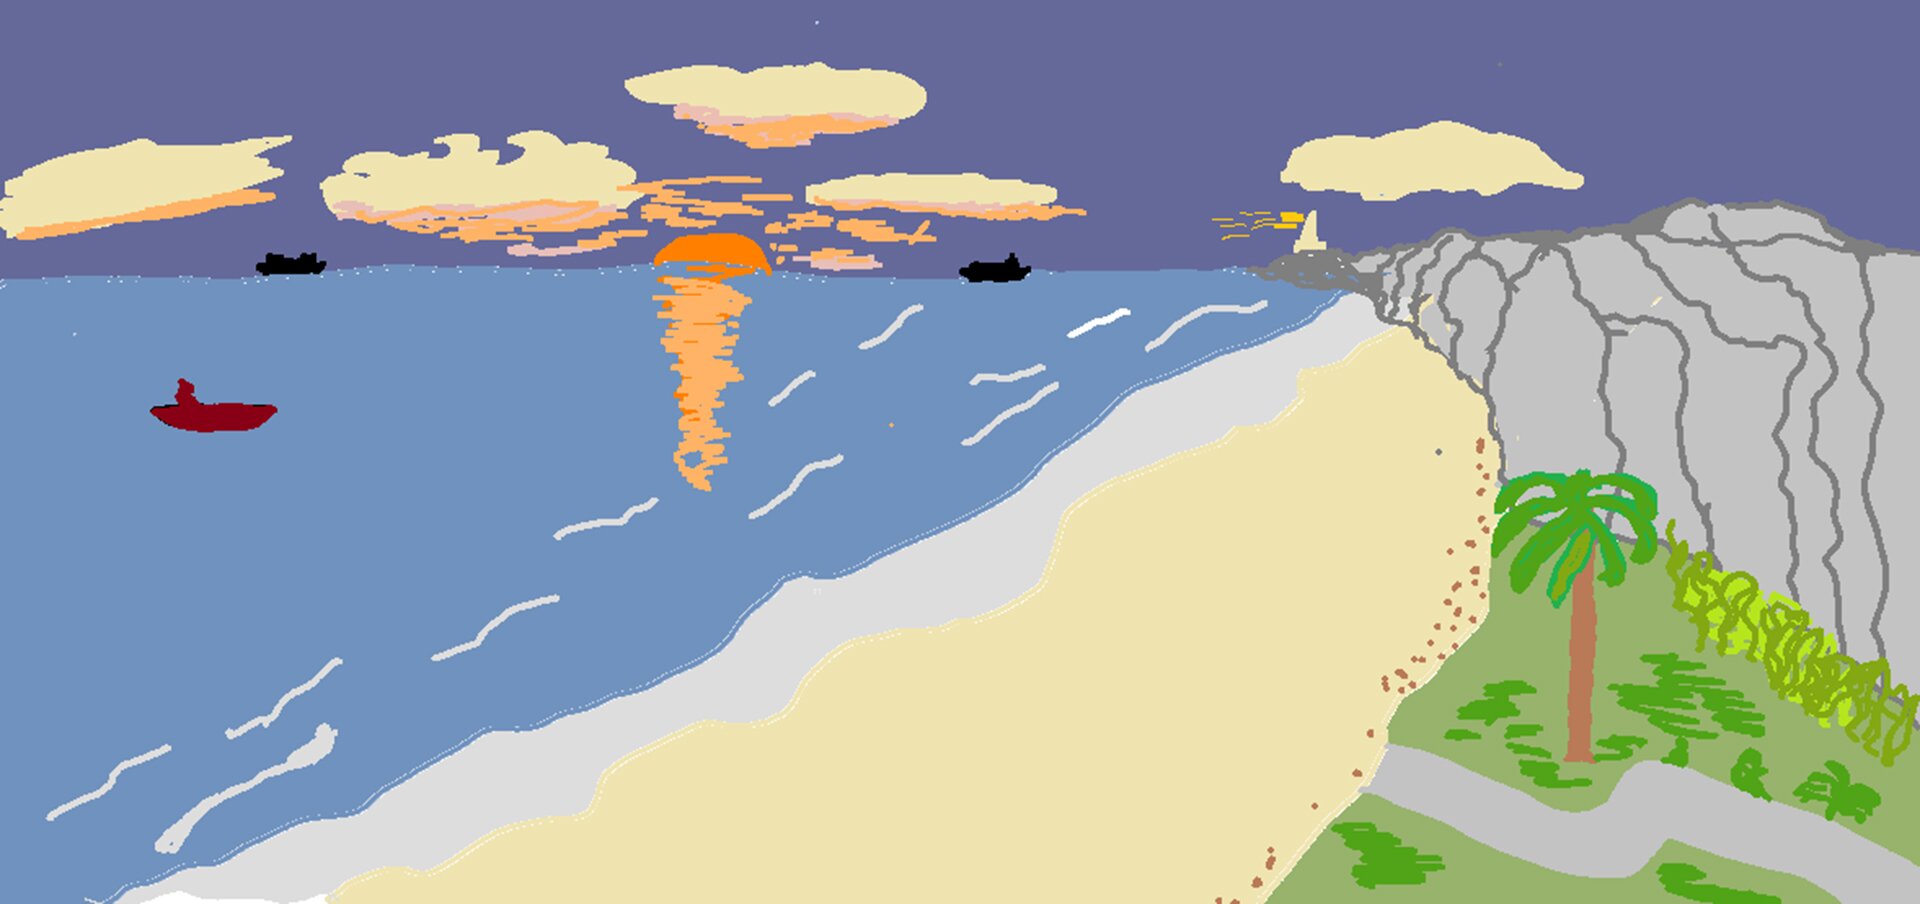 Ilustracja zrobiona w programie graficznym przedstawia zachód słońca nad morzem, piaszczystą plażę, góry i drogę w tropikalnym zagajniku. Po morzu pływają łodzie, na niebie widać chmury. 